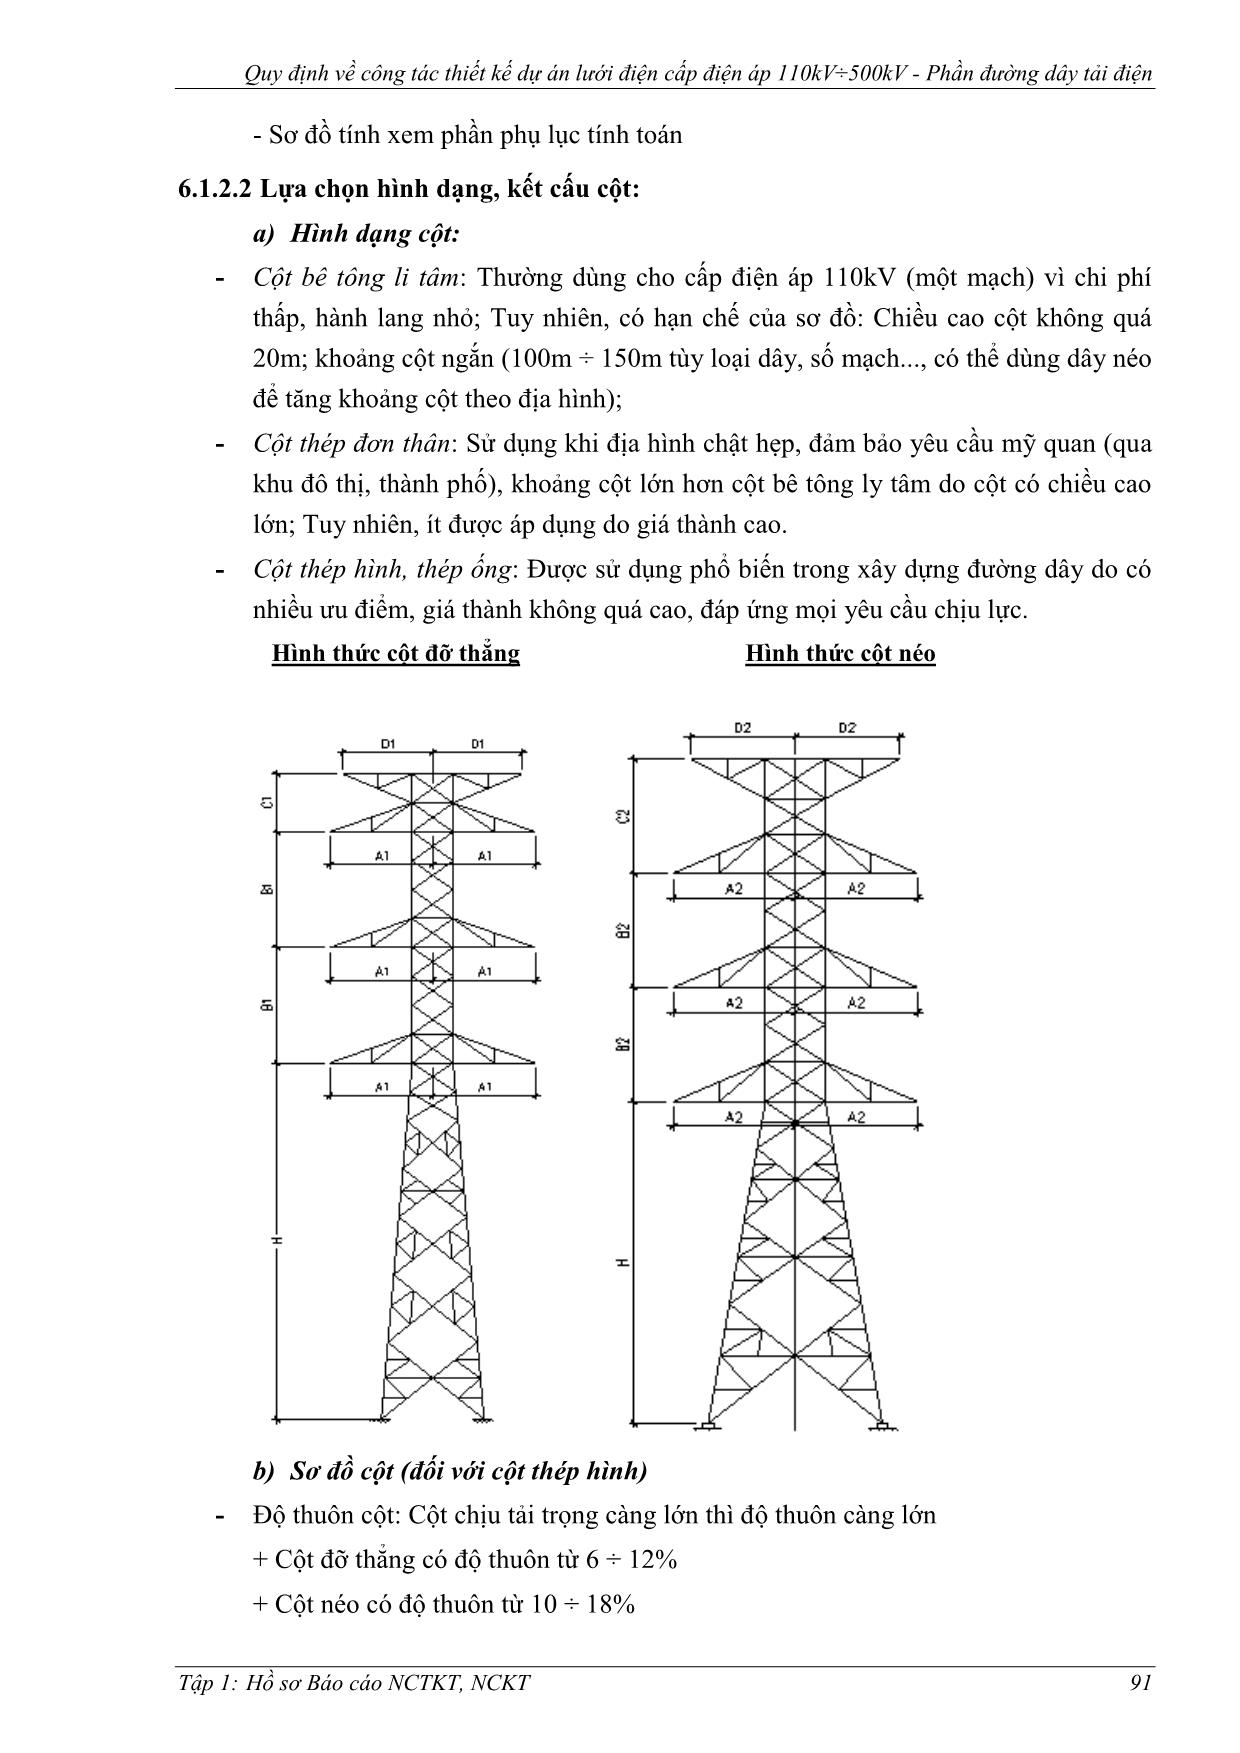 Giáo trình Quy định về công tác thiết kế dự án lưới điện cấp điện áp 110kV÷500kV. Phần đường dây tải điện - Chương 6: Thuyết minh xây dựng phần đường dây trang 4